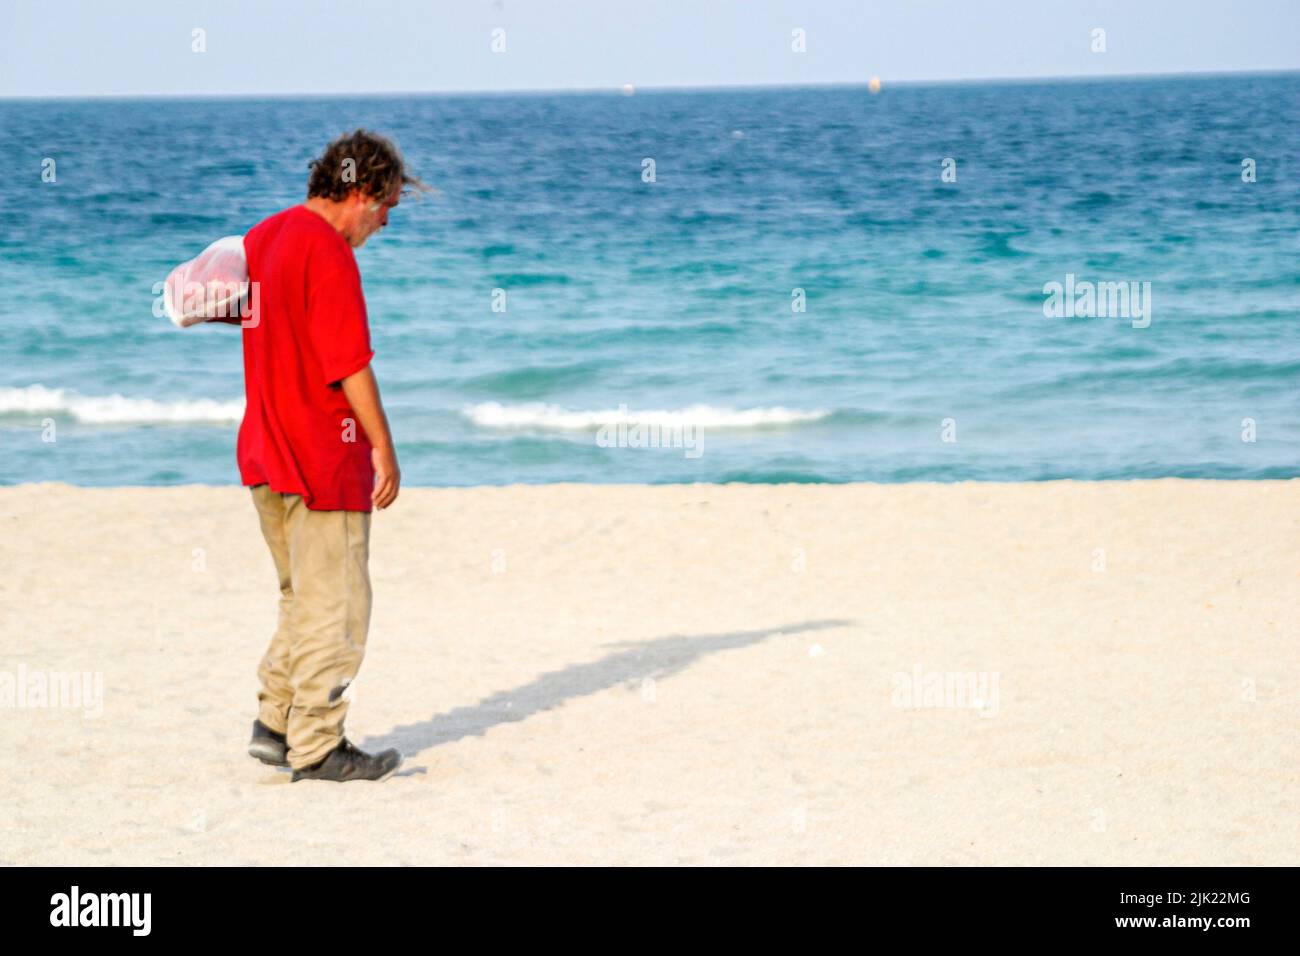 Miami Beach Florida, Atlantic Ocean Shore costa costa costa costa costa mare, vagrand homeless uomo mendicante, spiagge pubbliche sabbia, persone Foto Stock